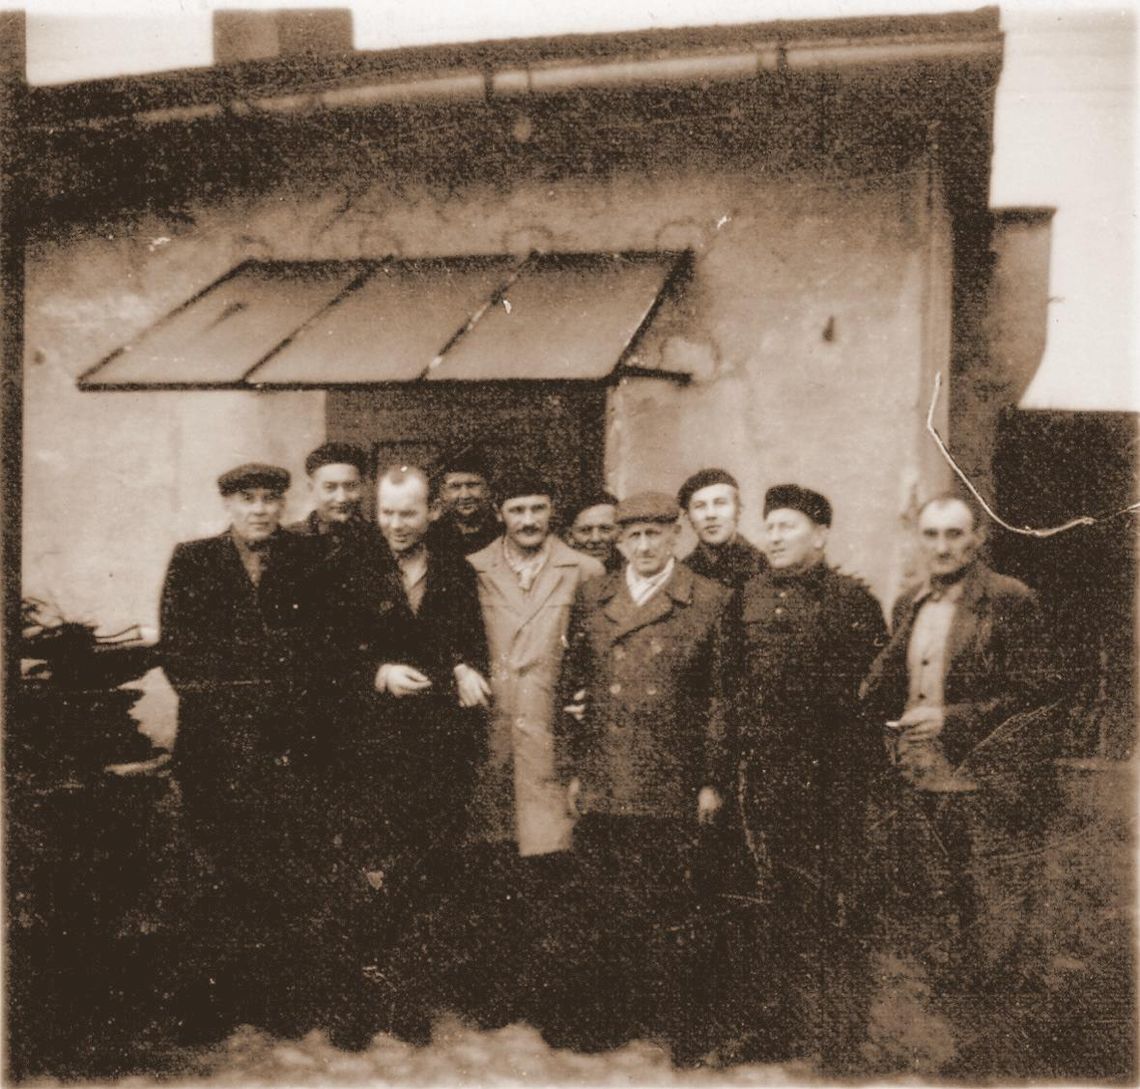 ZDUŃSKIE OPOWIEŚCI: Historia kaflarni w Zdunach na archiwalnych fotografiach